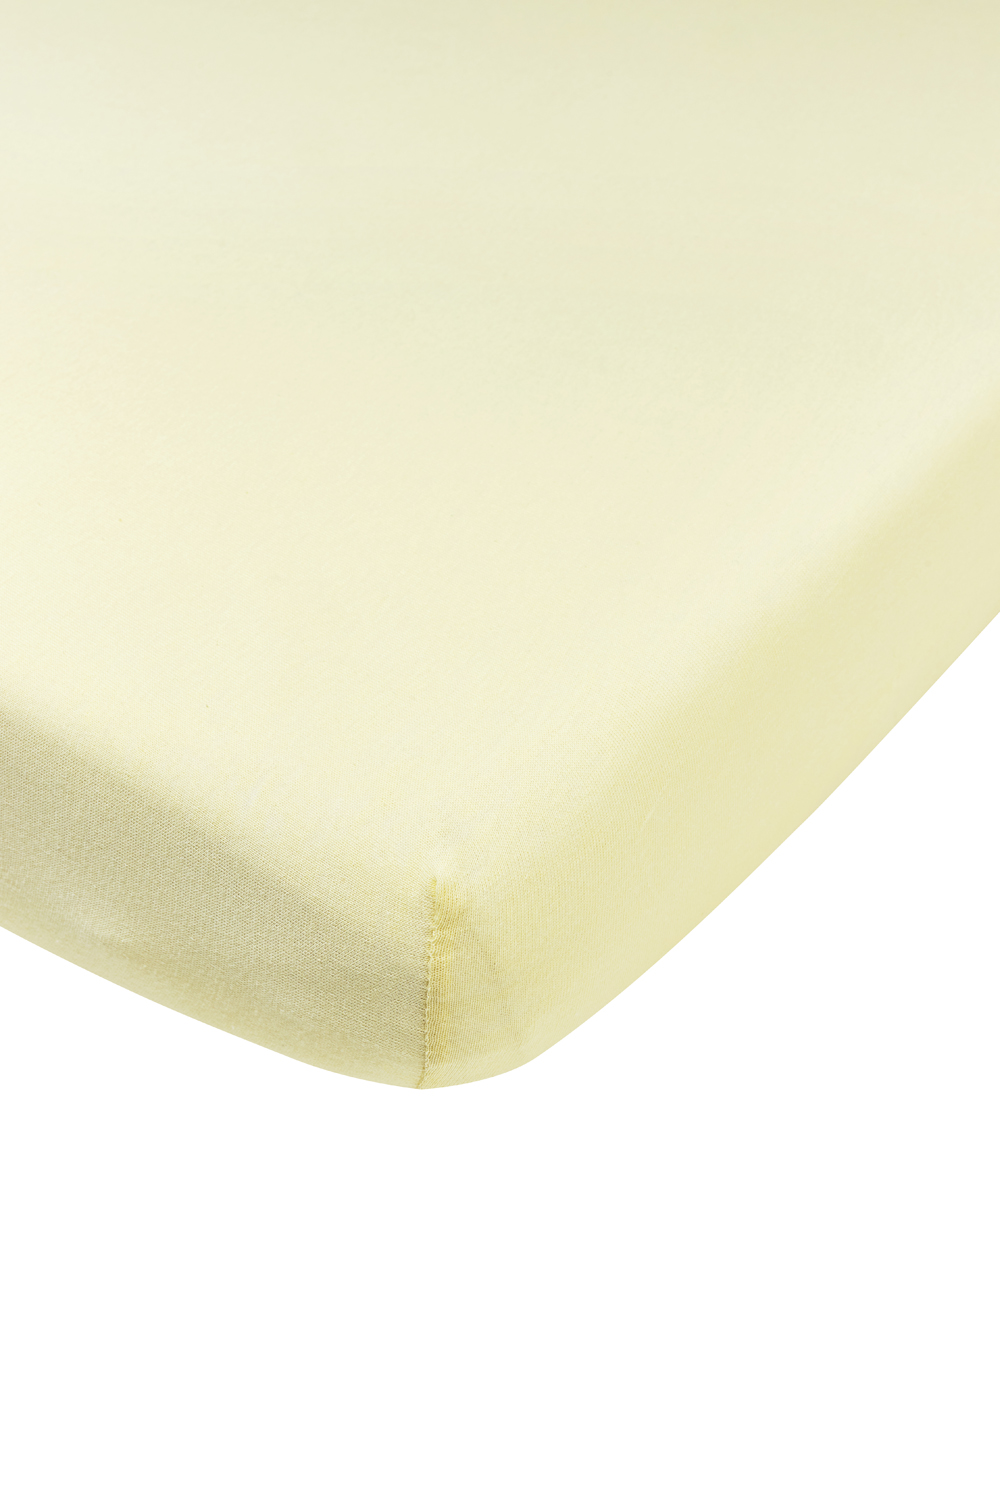 Fitted sheet playpen mattress Uni - soft yellow - 75x95cm